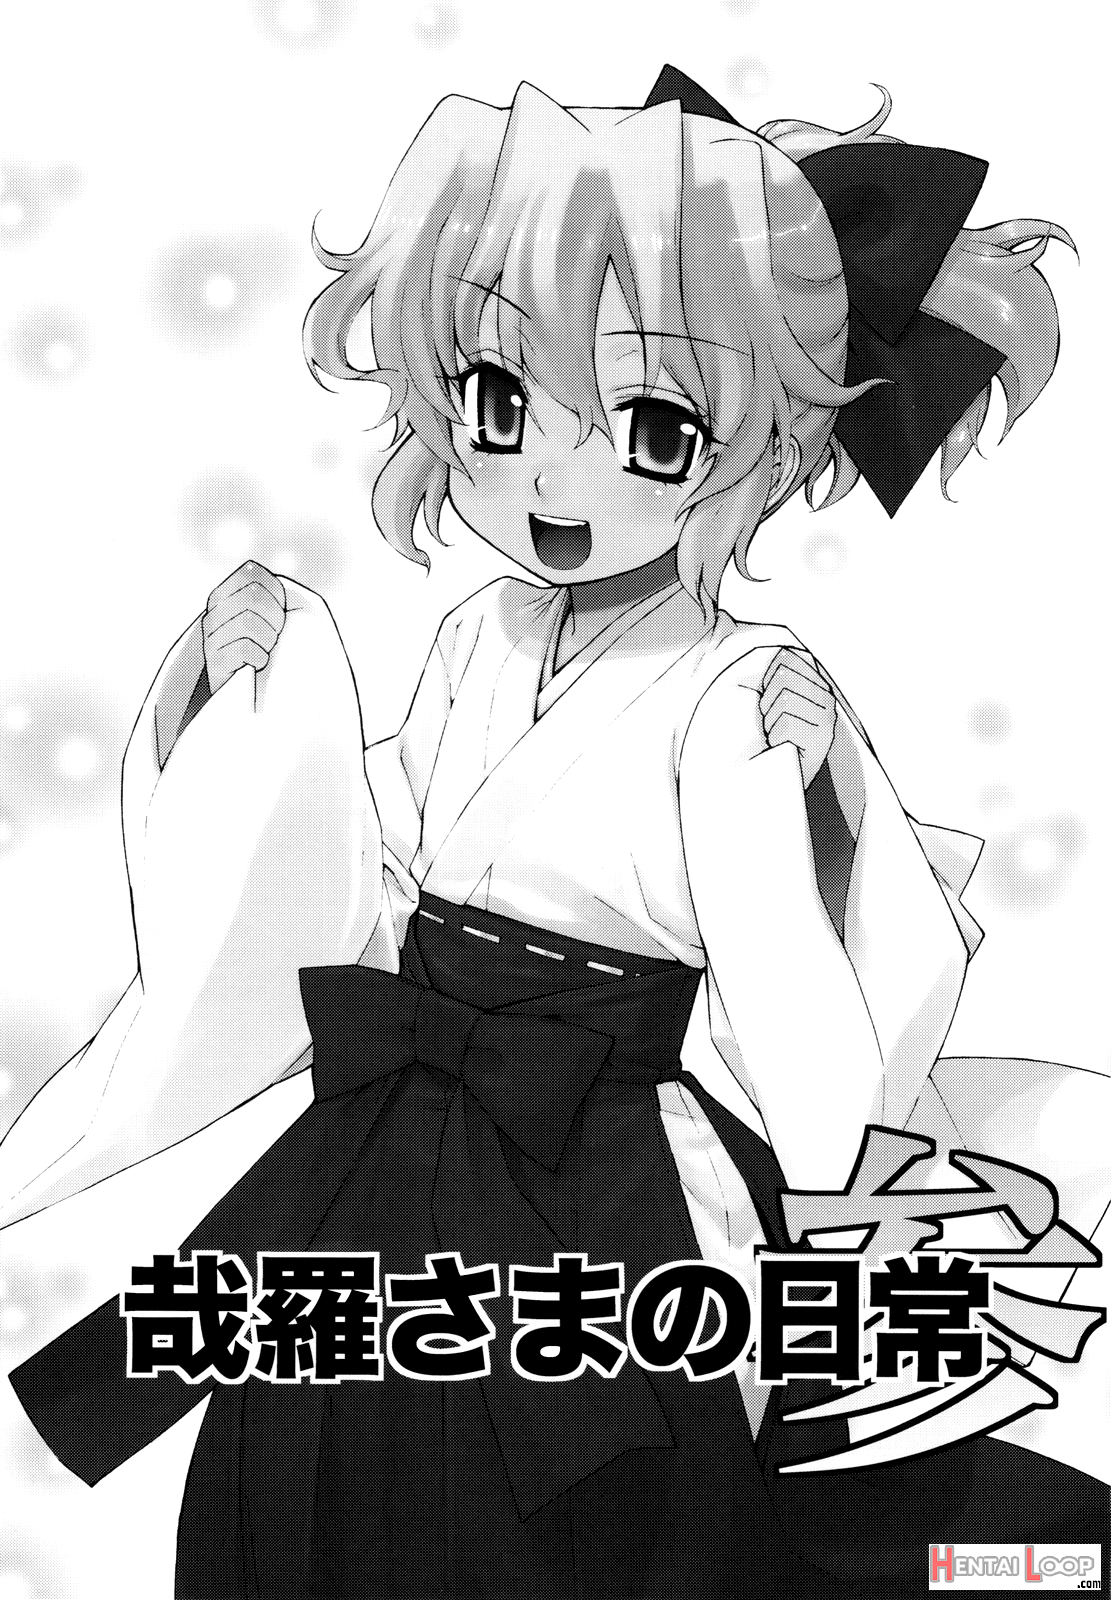 Kanara-sama No Nichijou San + Shiori page 2